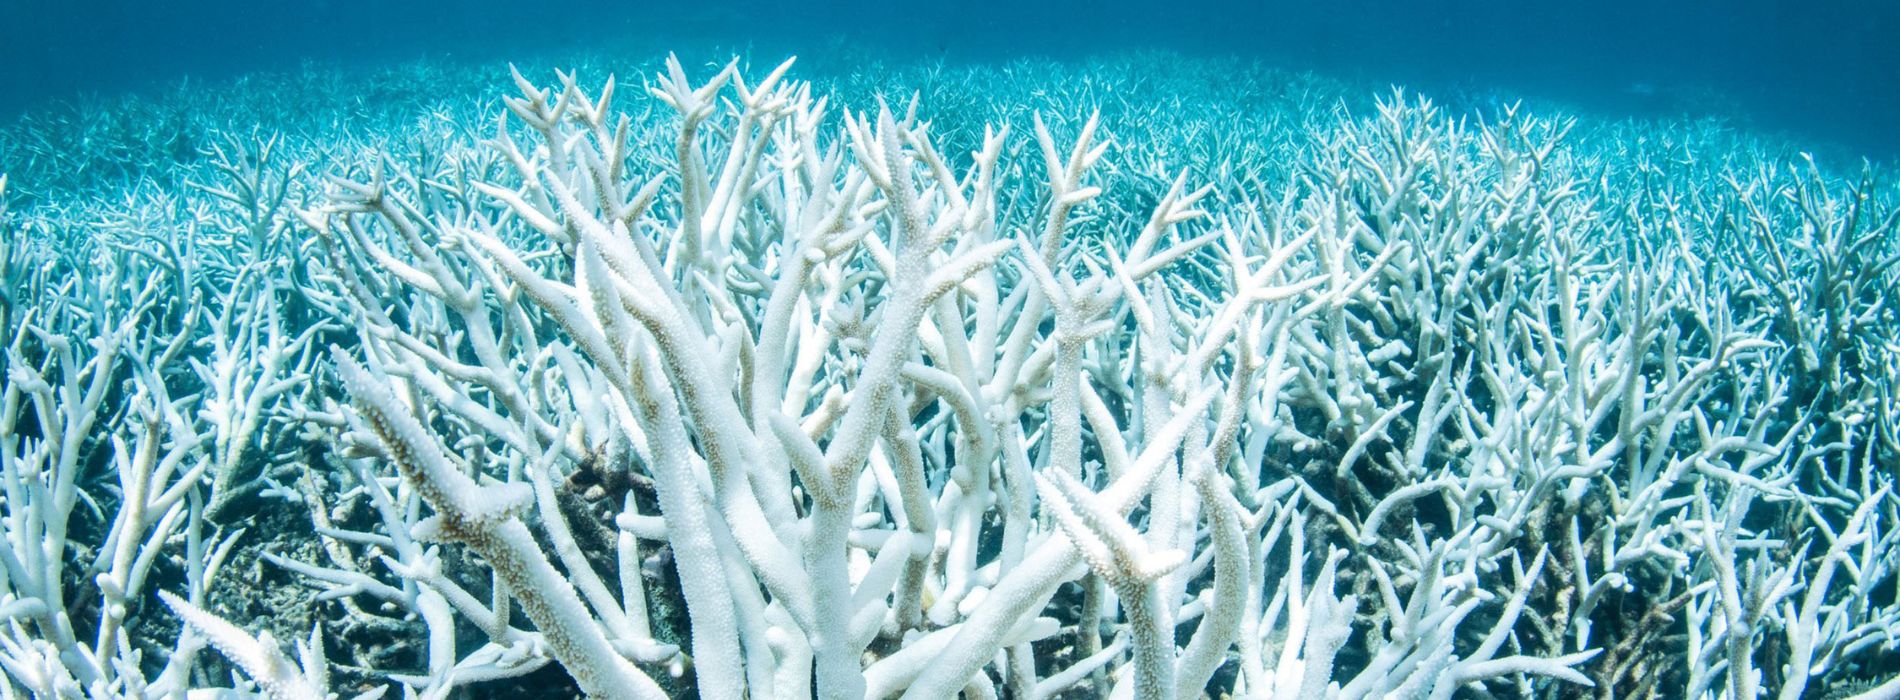 blanqueamiento-de-arrecifes-de-coral